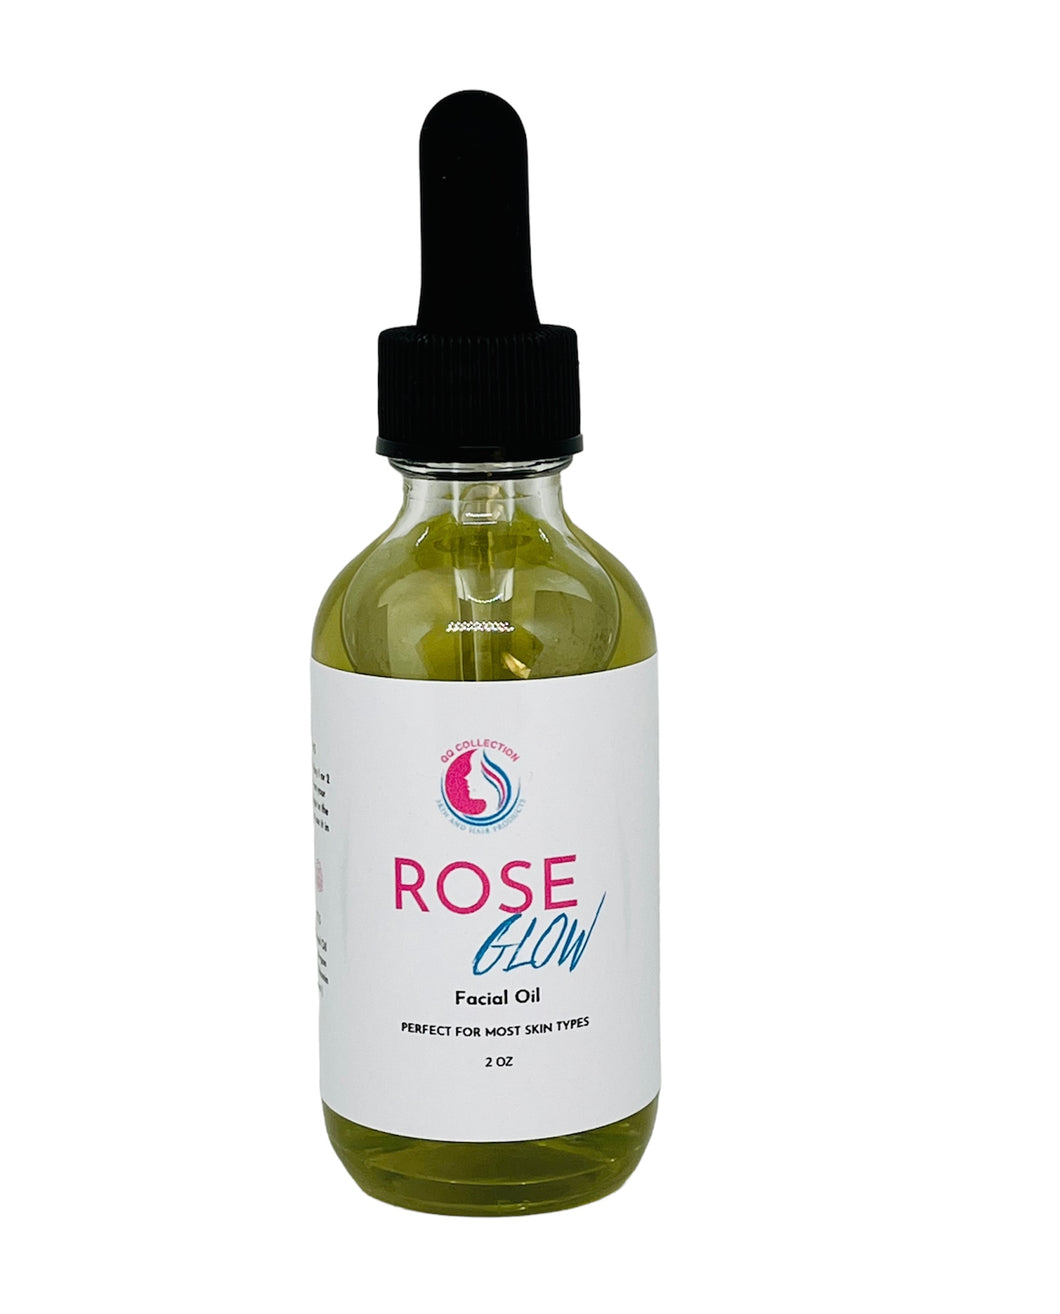 Rose Glow Facial Oil Serum